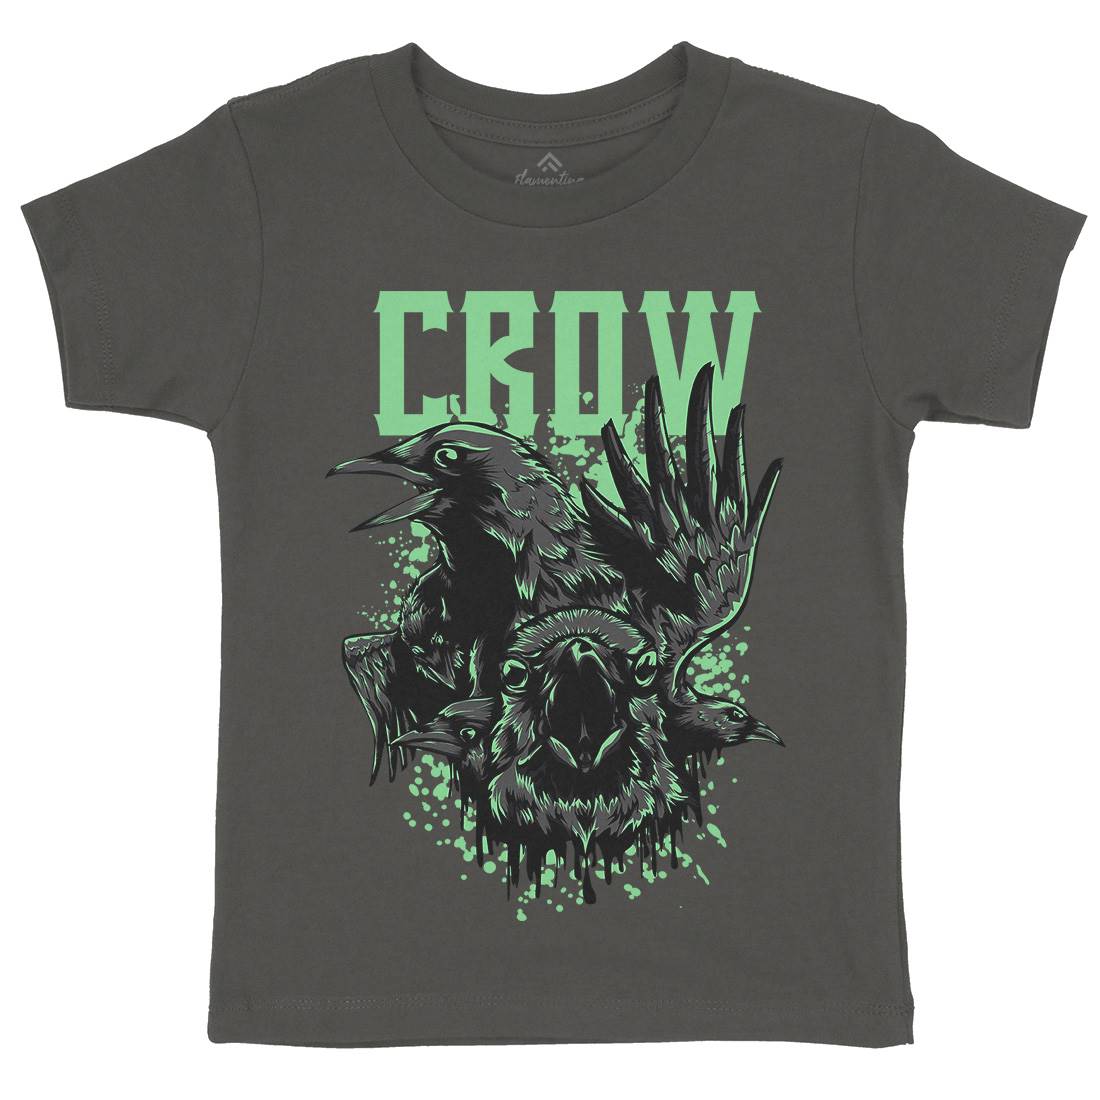 Crow Kids Crew Neck T-Shirt Horror D850